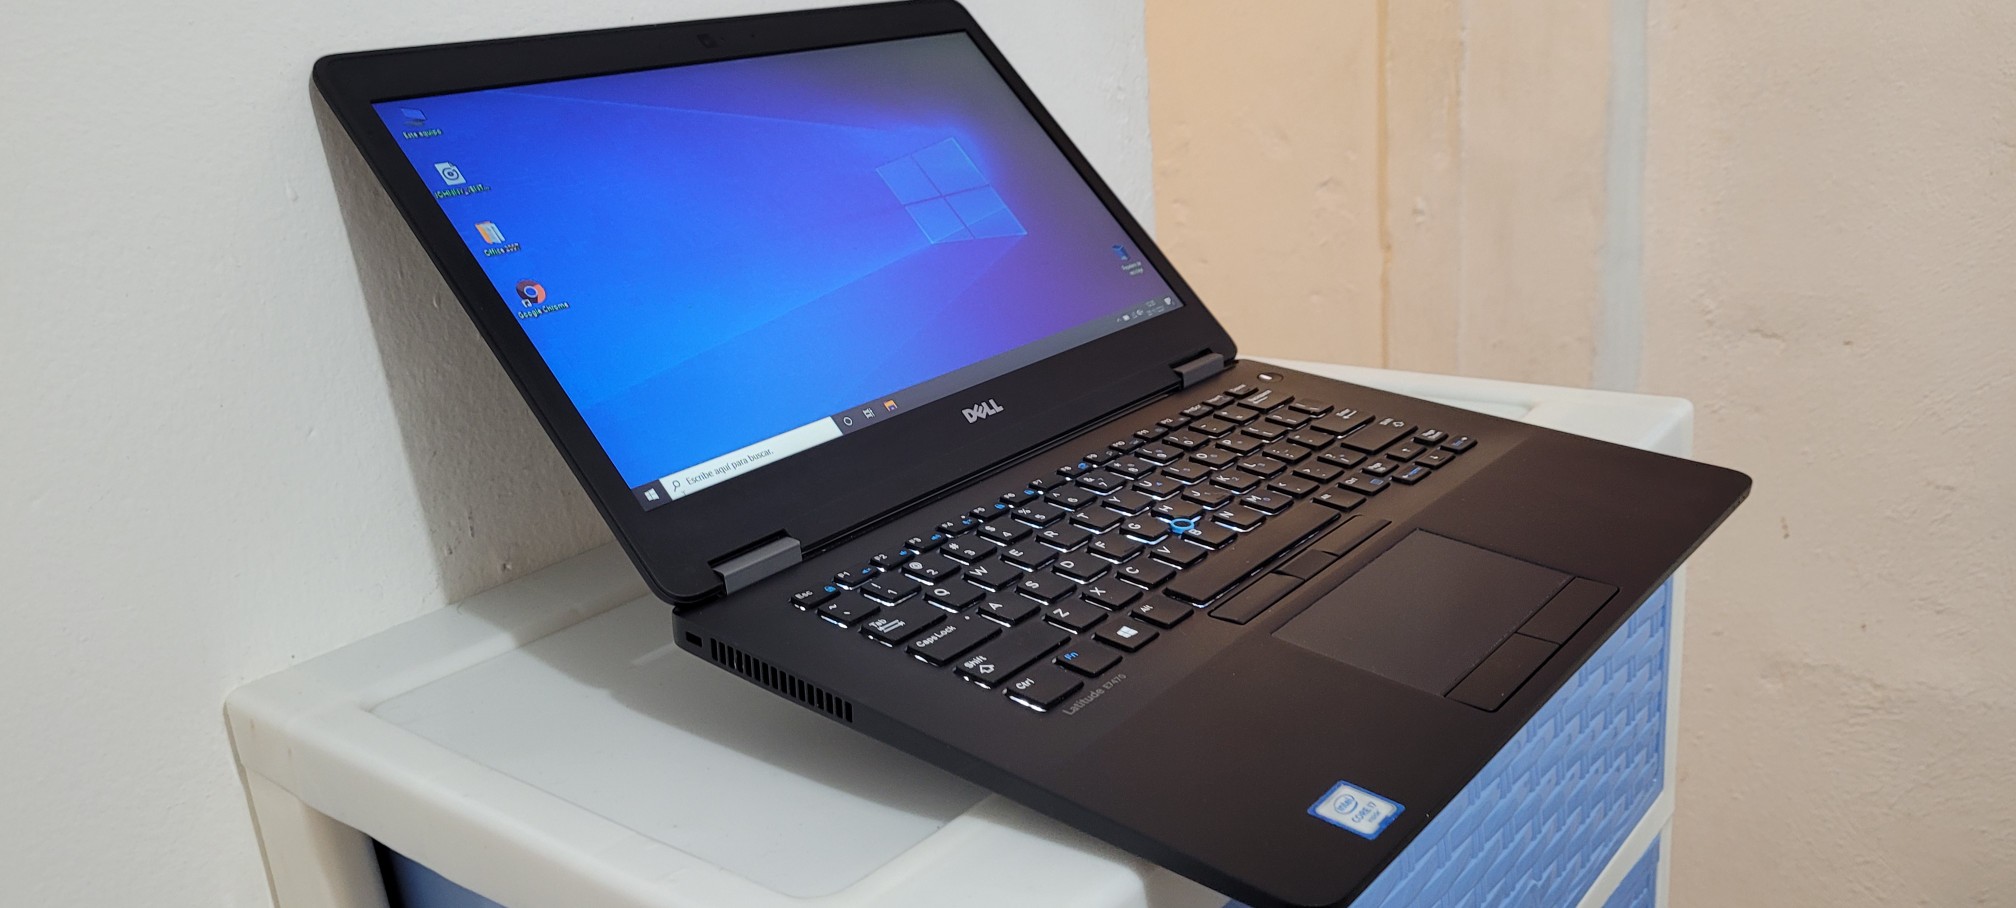 computadoras y laptops - Dell 7480 14 Pulg Core i5 7ma Gen Ram 8gb Disco 128gb SSD full HD 1